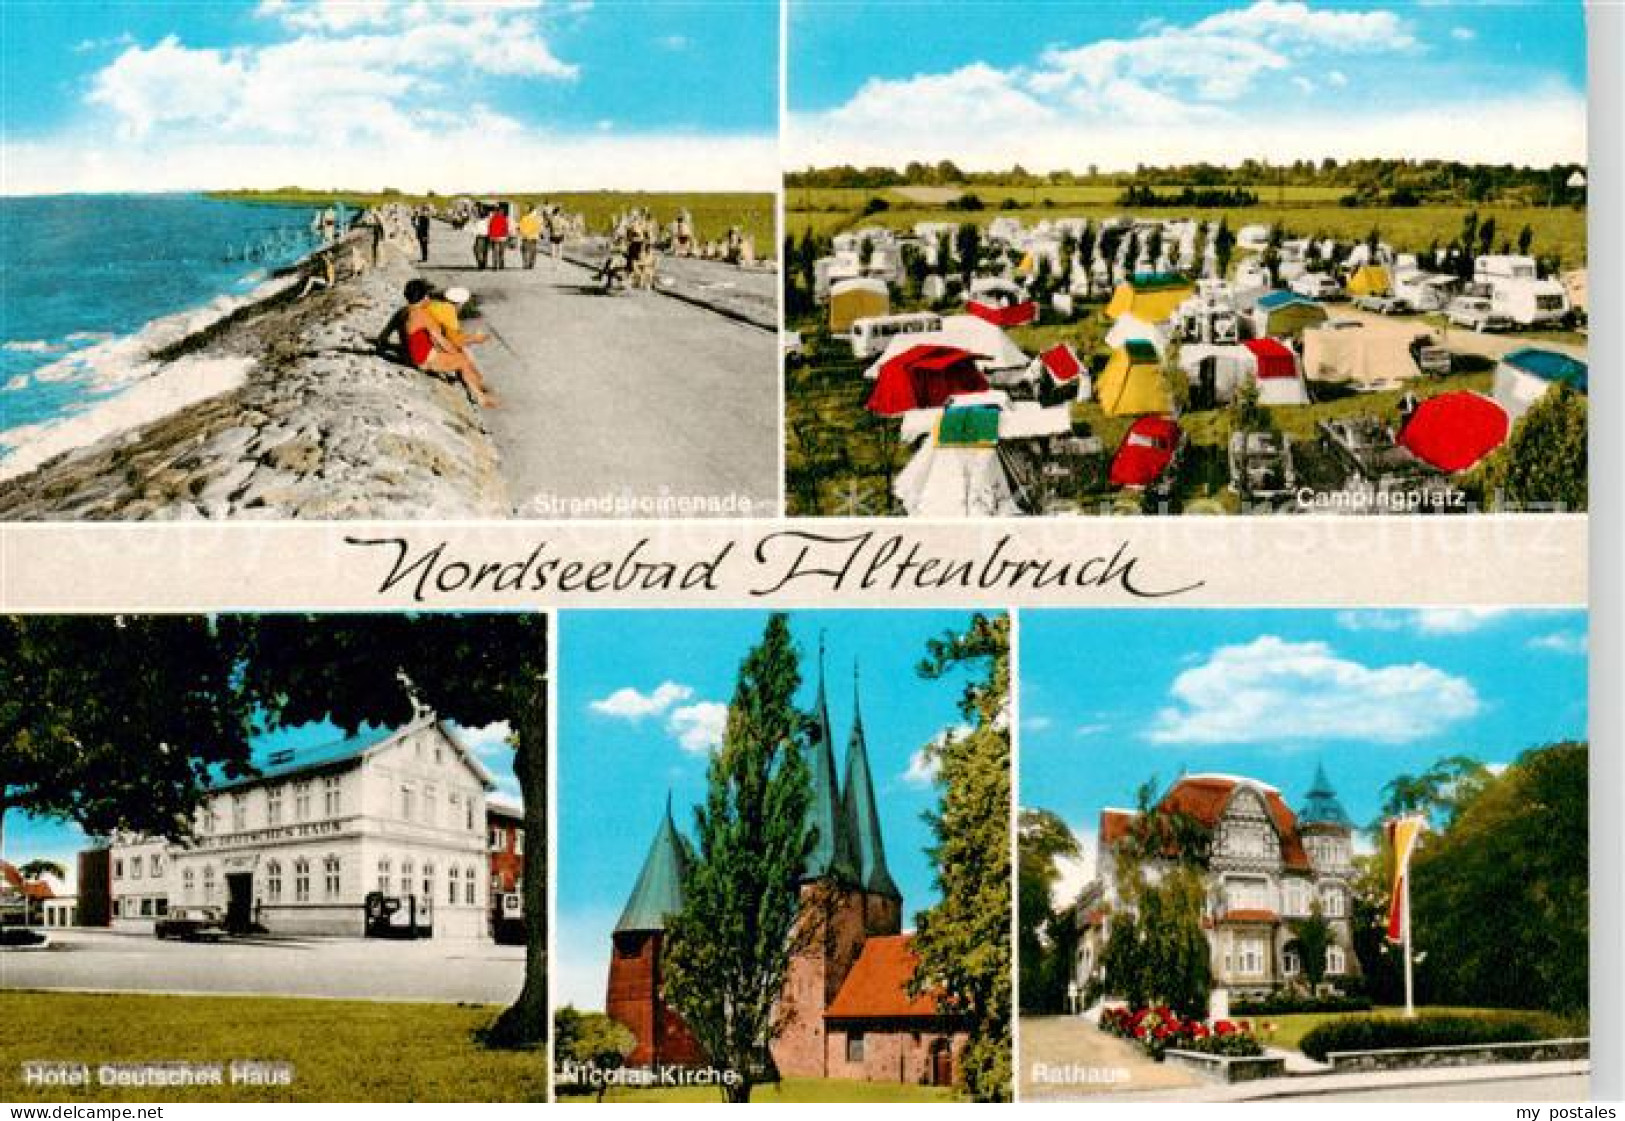 73851474 Altenbruch Cuxhaven Strandpromenade Campingplatz Hotel Deutsches Haus N - Cuxhaven